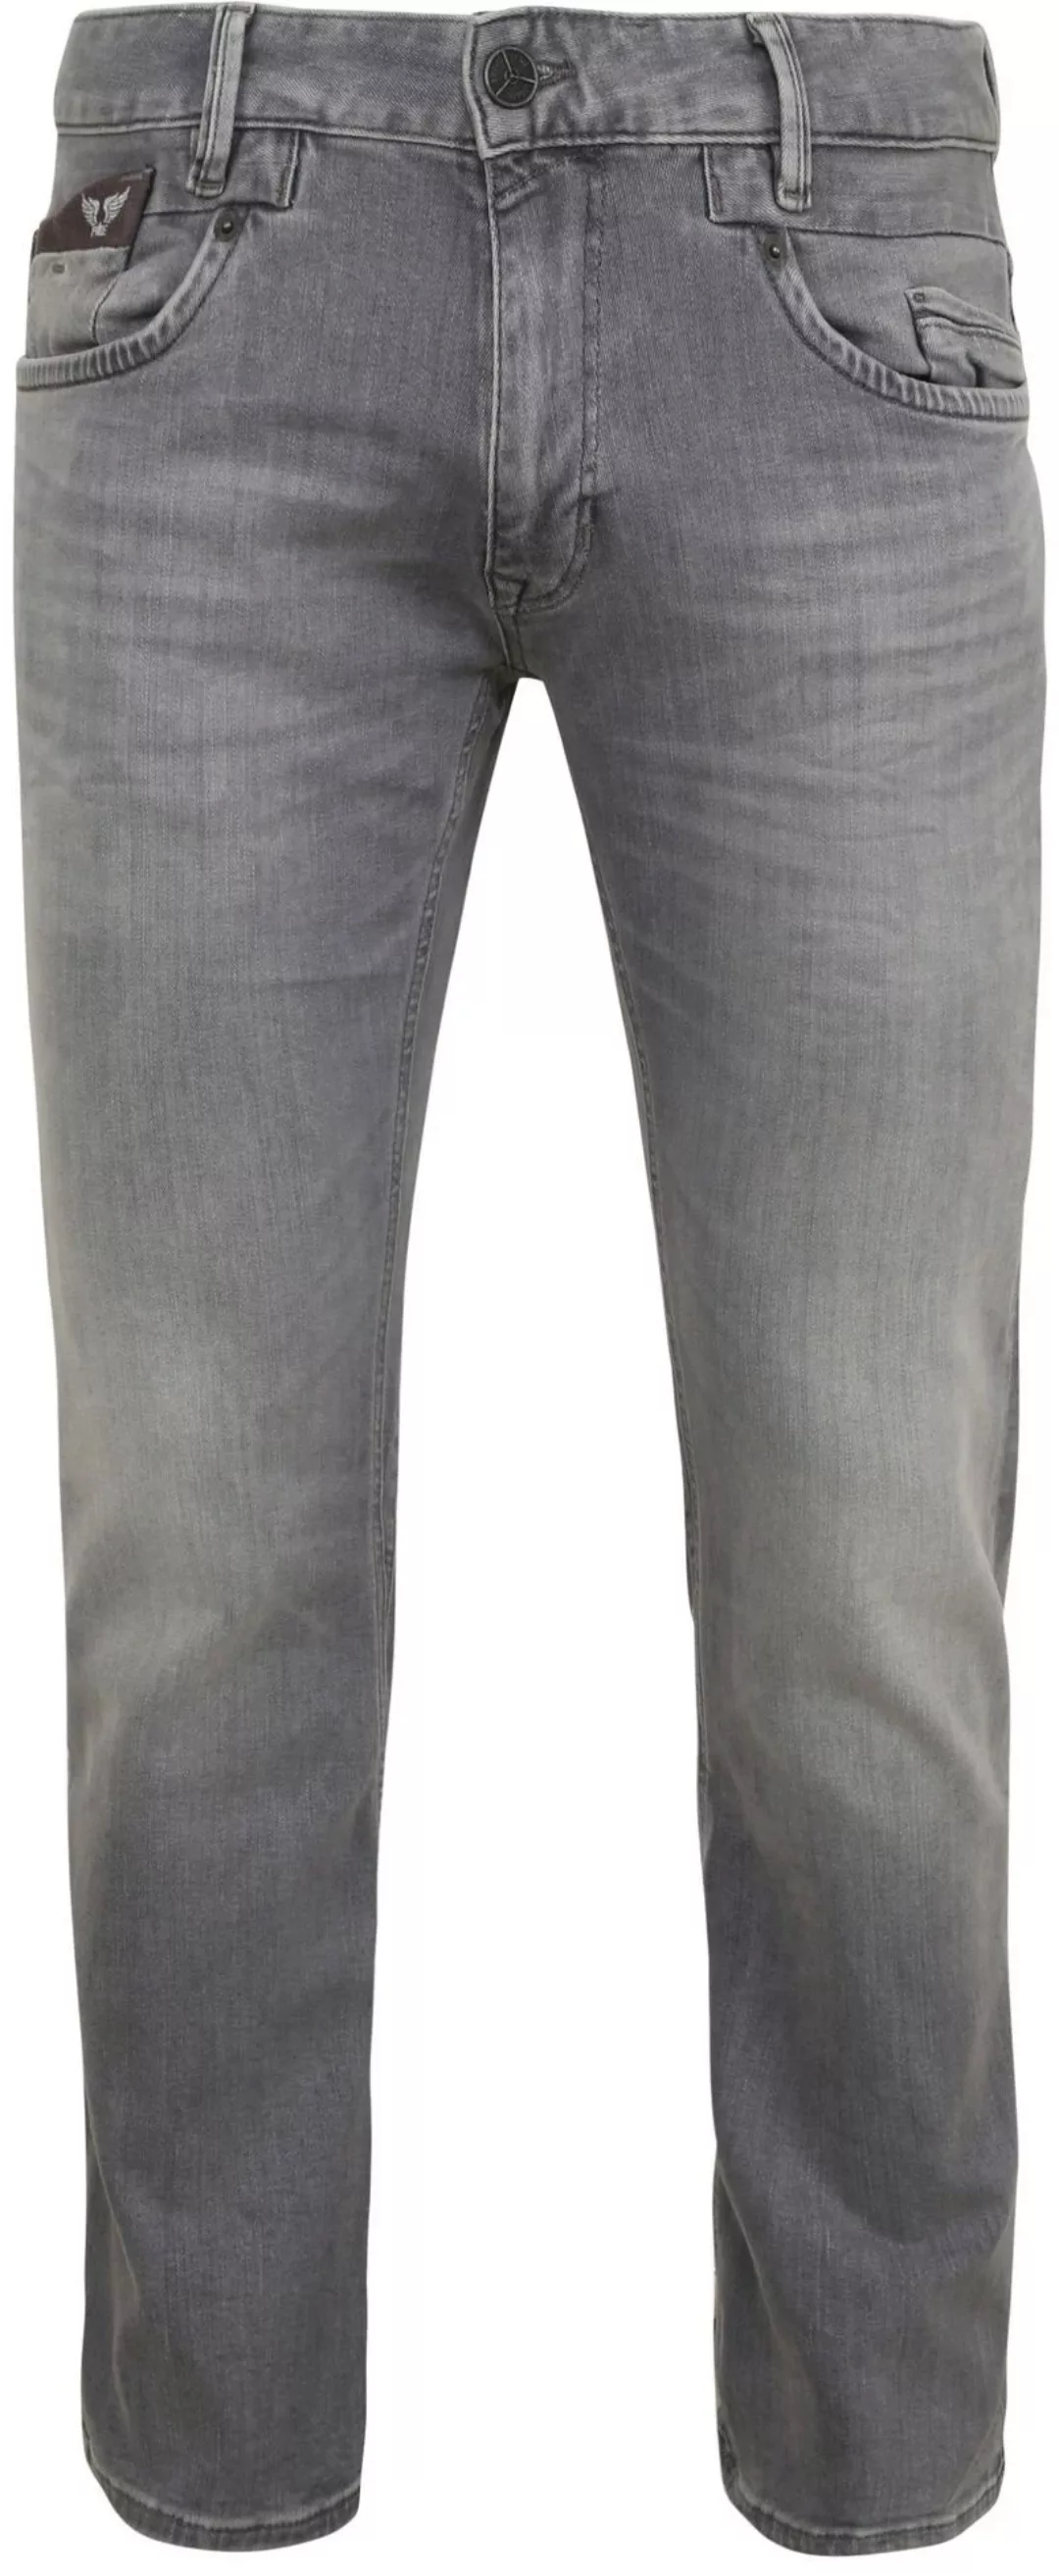 PME Legend Commander 3.0 Jeans Grau - Größe W 31 - L 34 günstig online kaufen